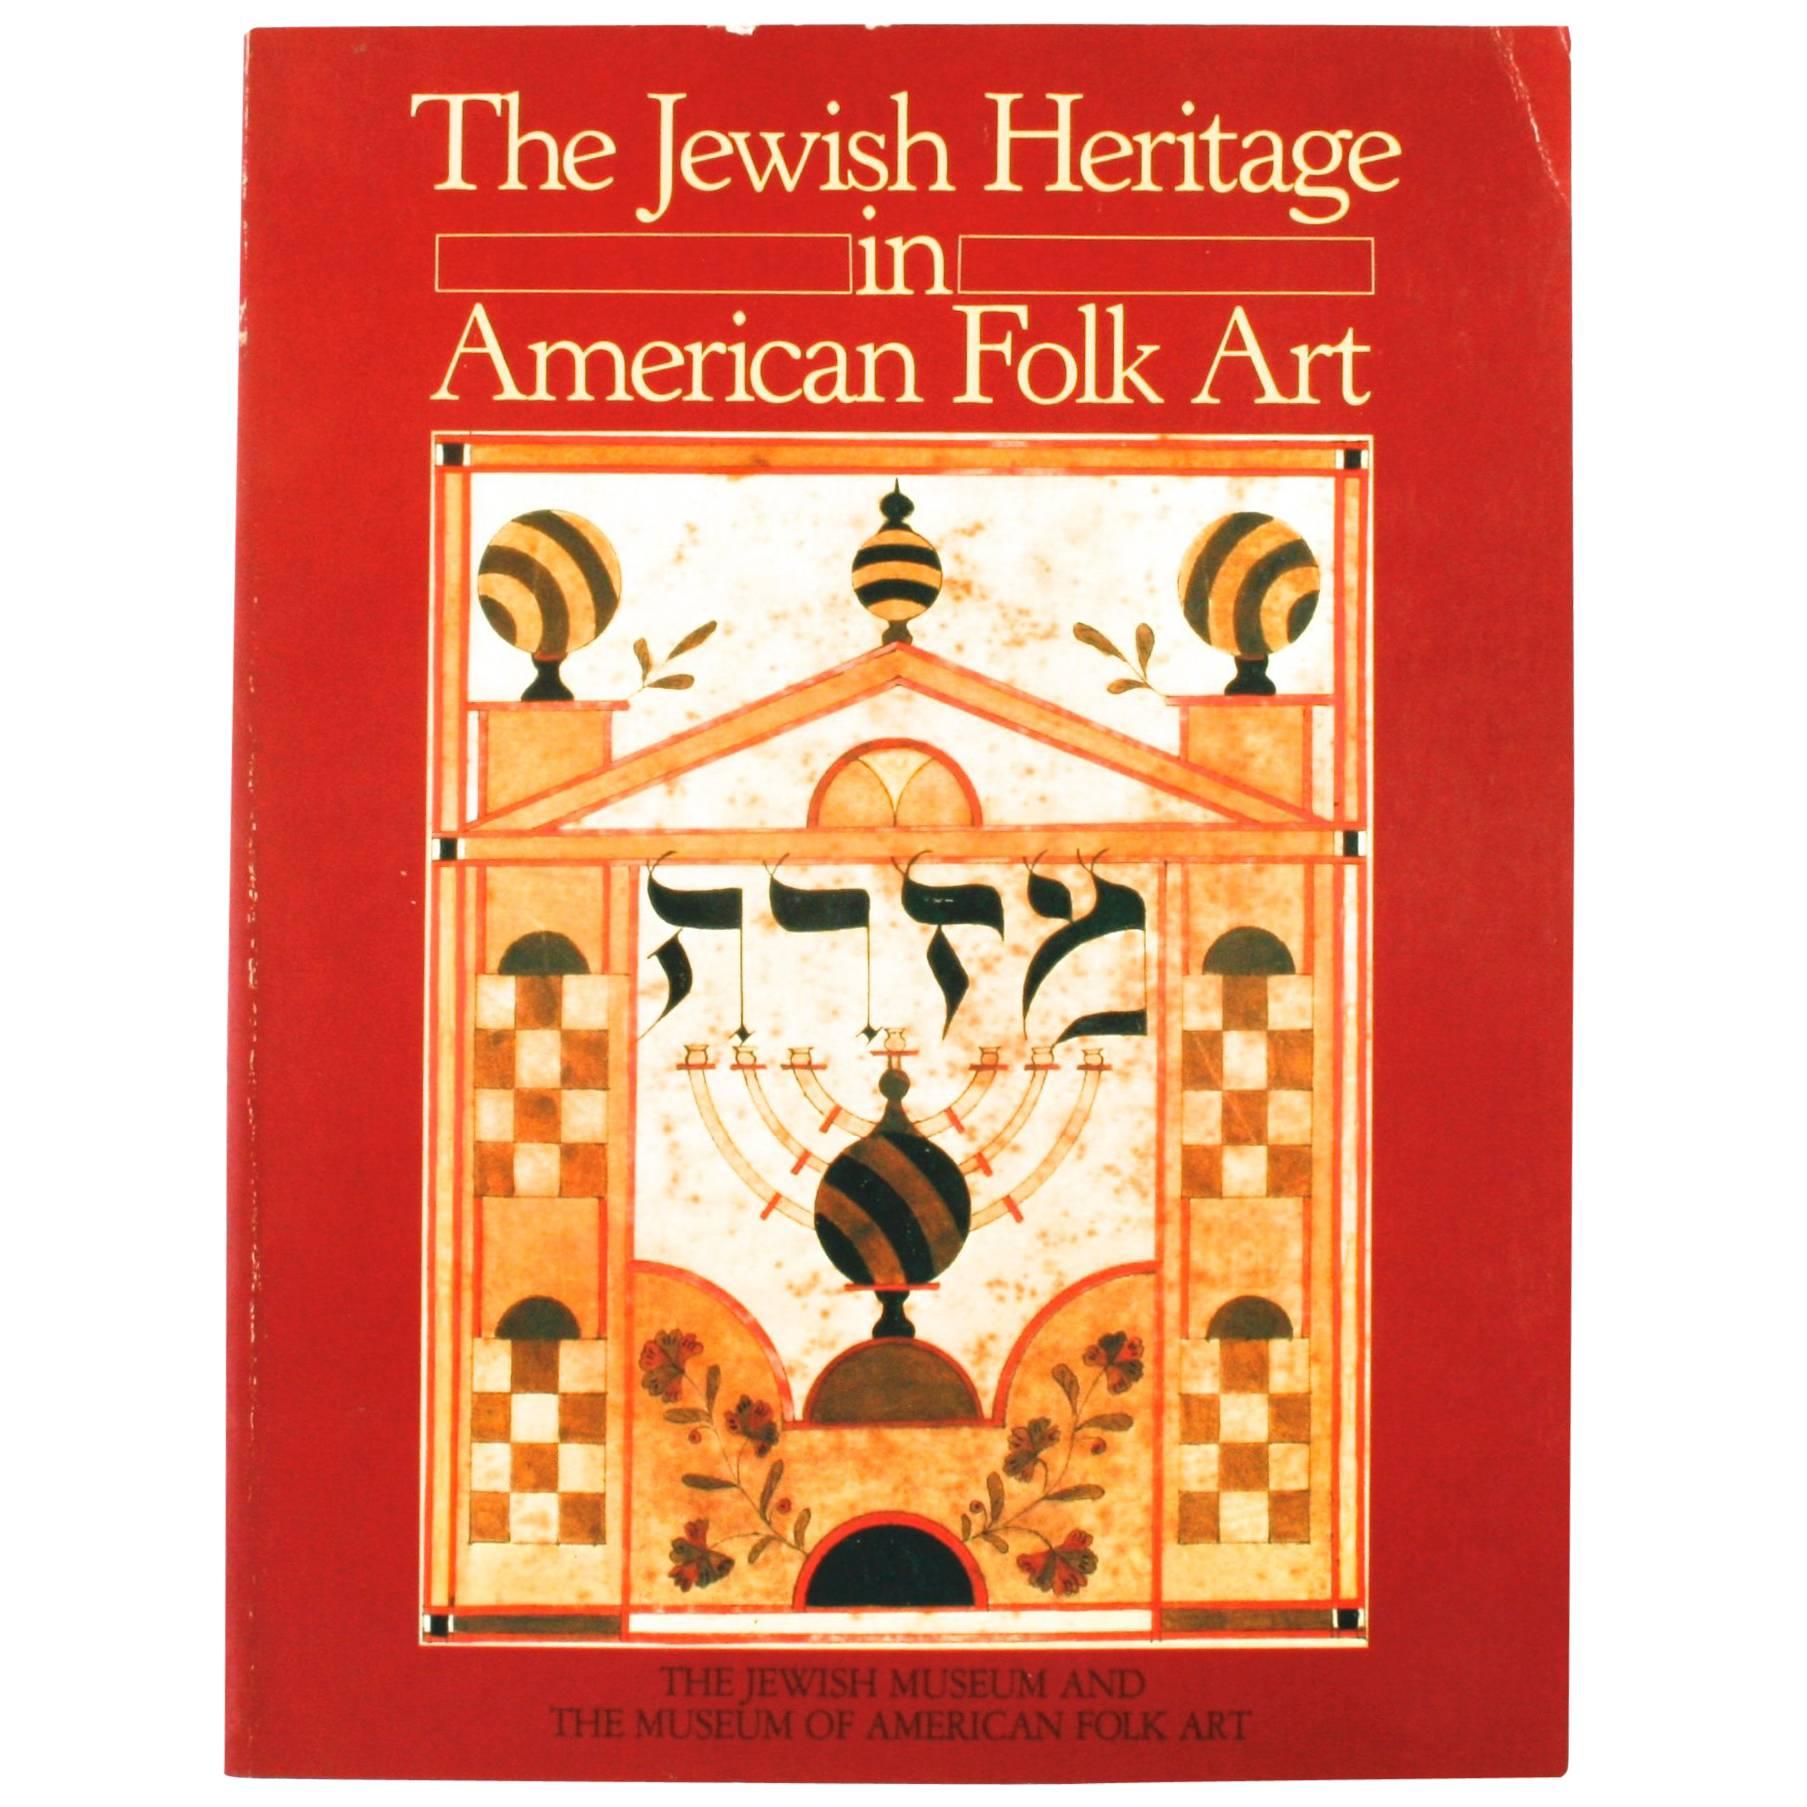 The Jewish Heritage in American Folk Art